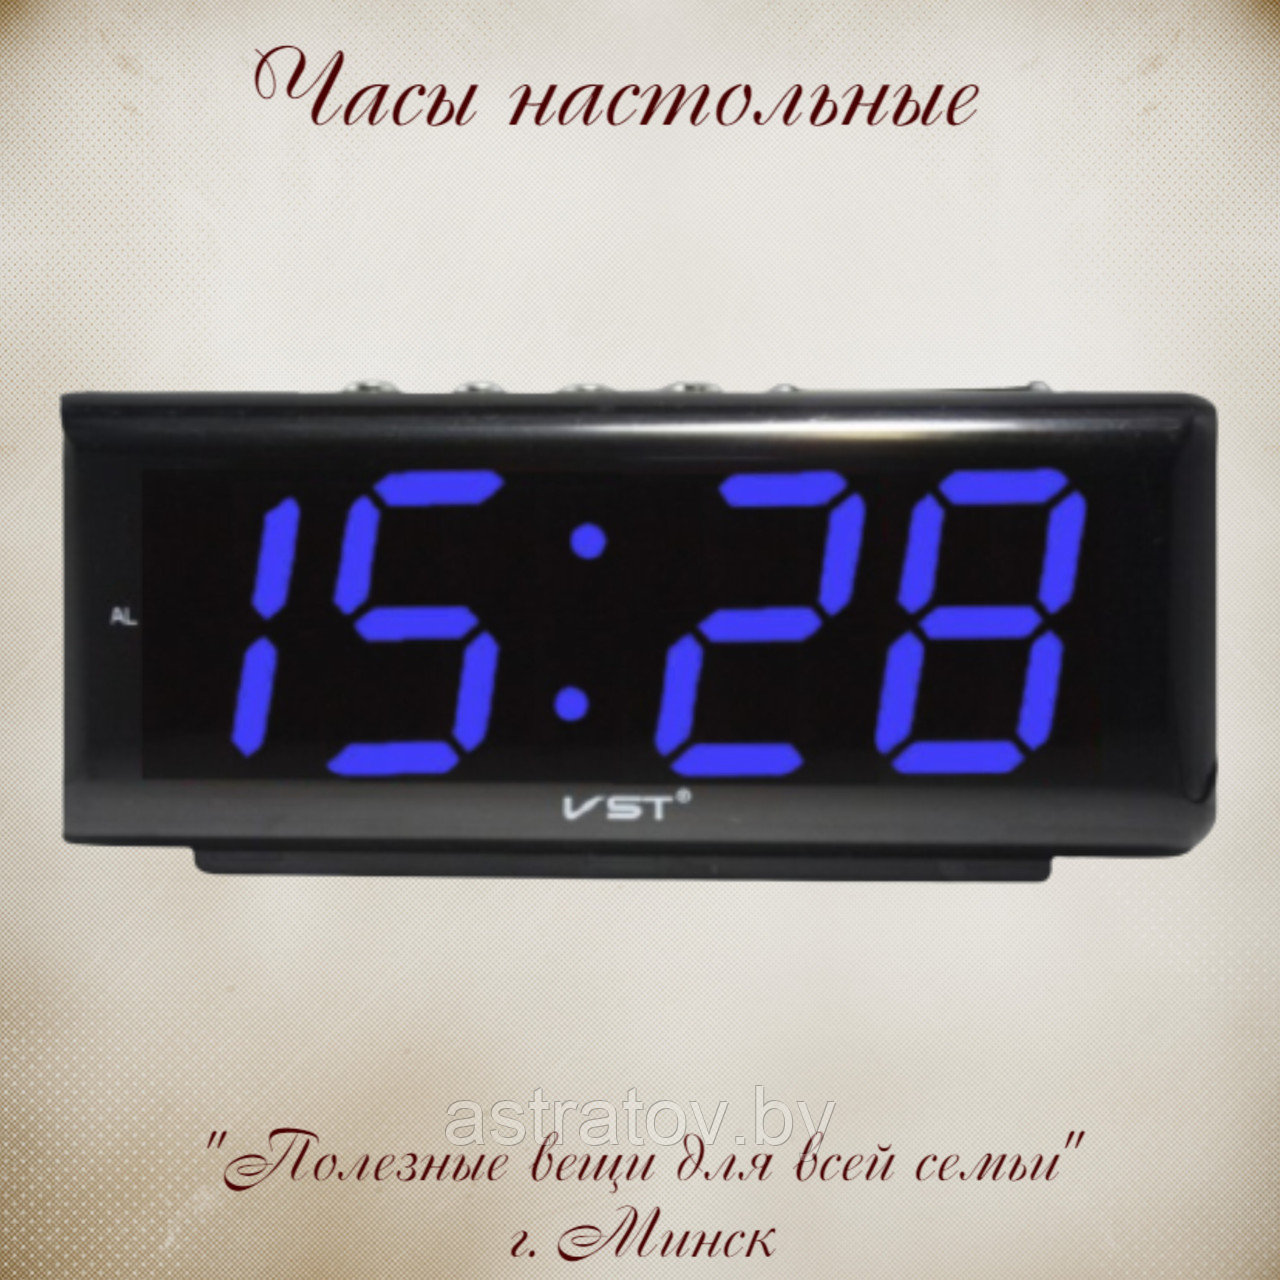 Часы электронные  20*5*8 см  VST762-5